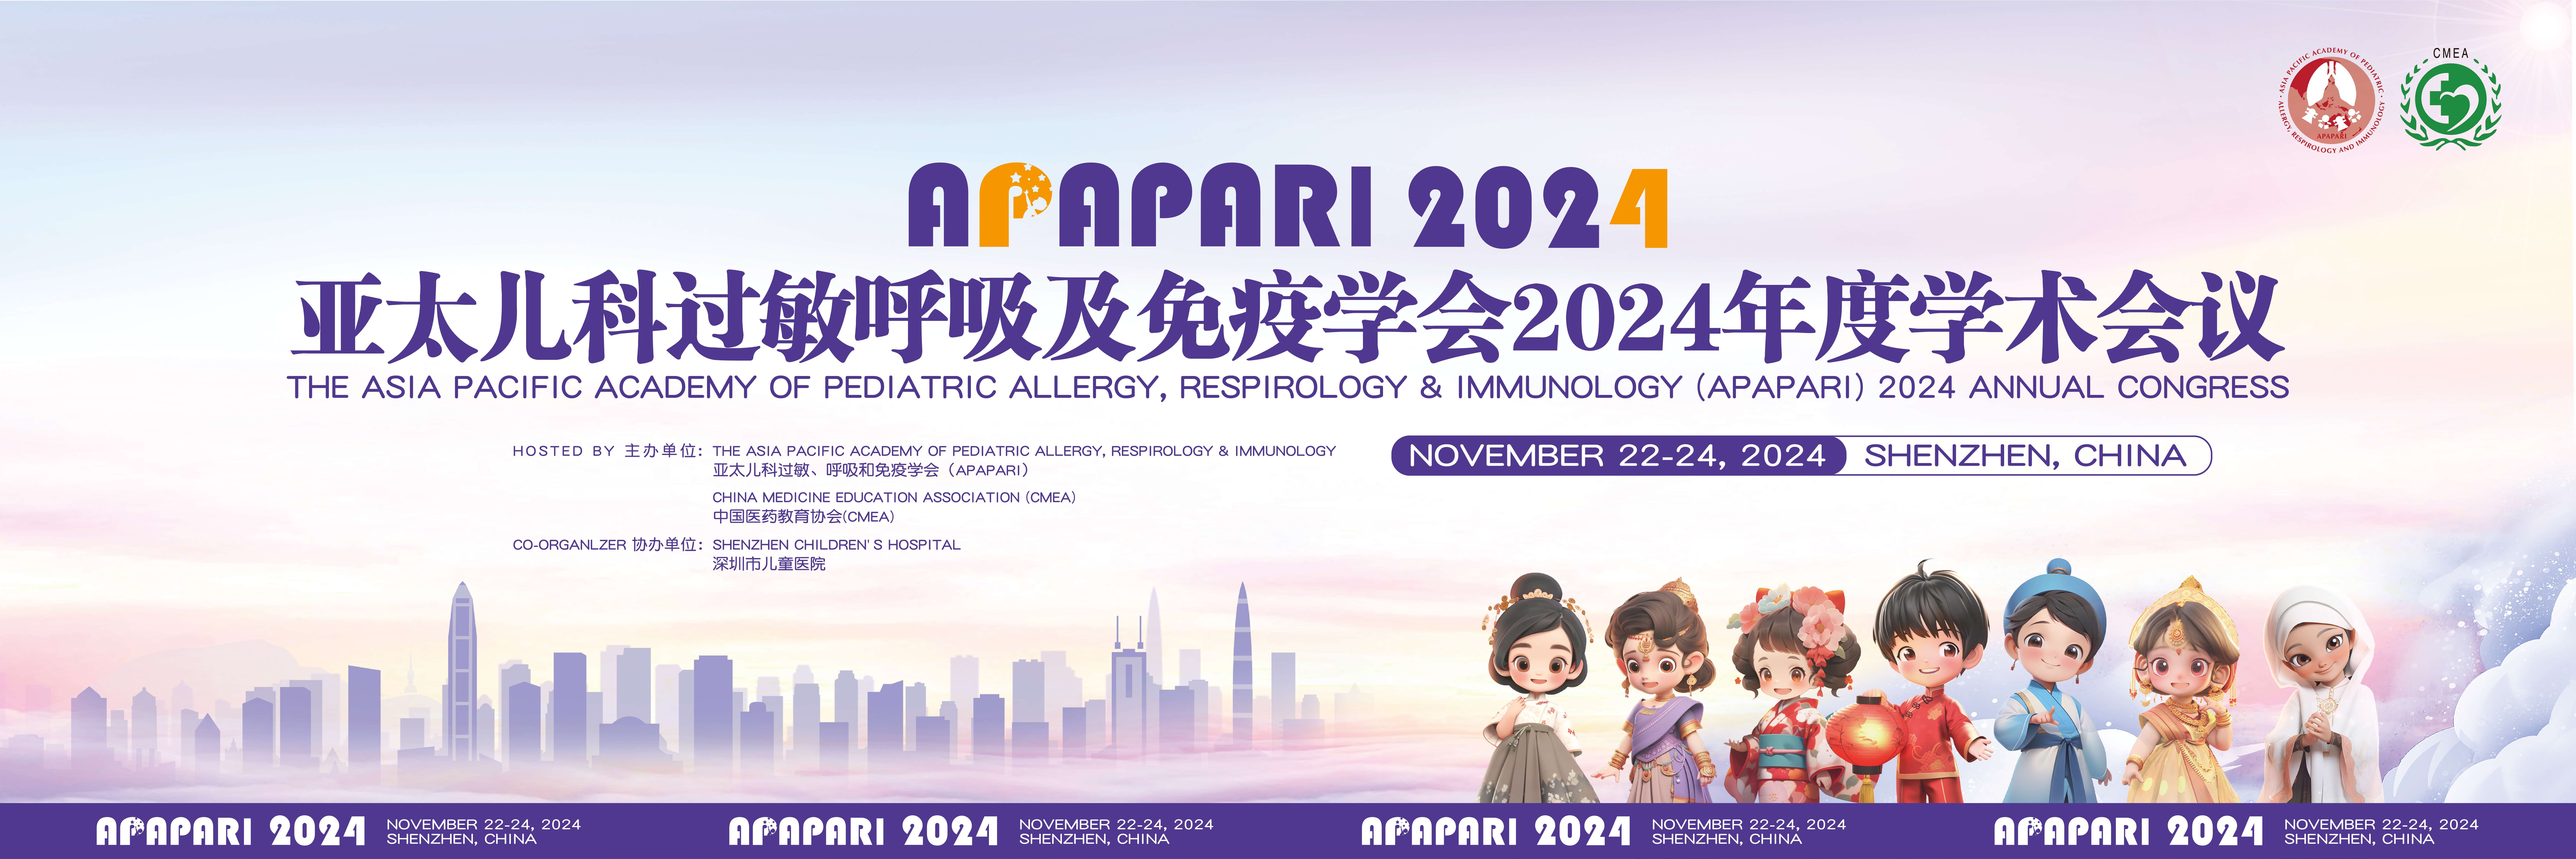 亚太儿科过敏、呼吸及免疫学会2024年度学术会议 (APAPARI2024)